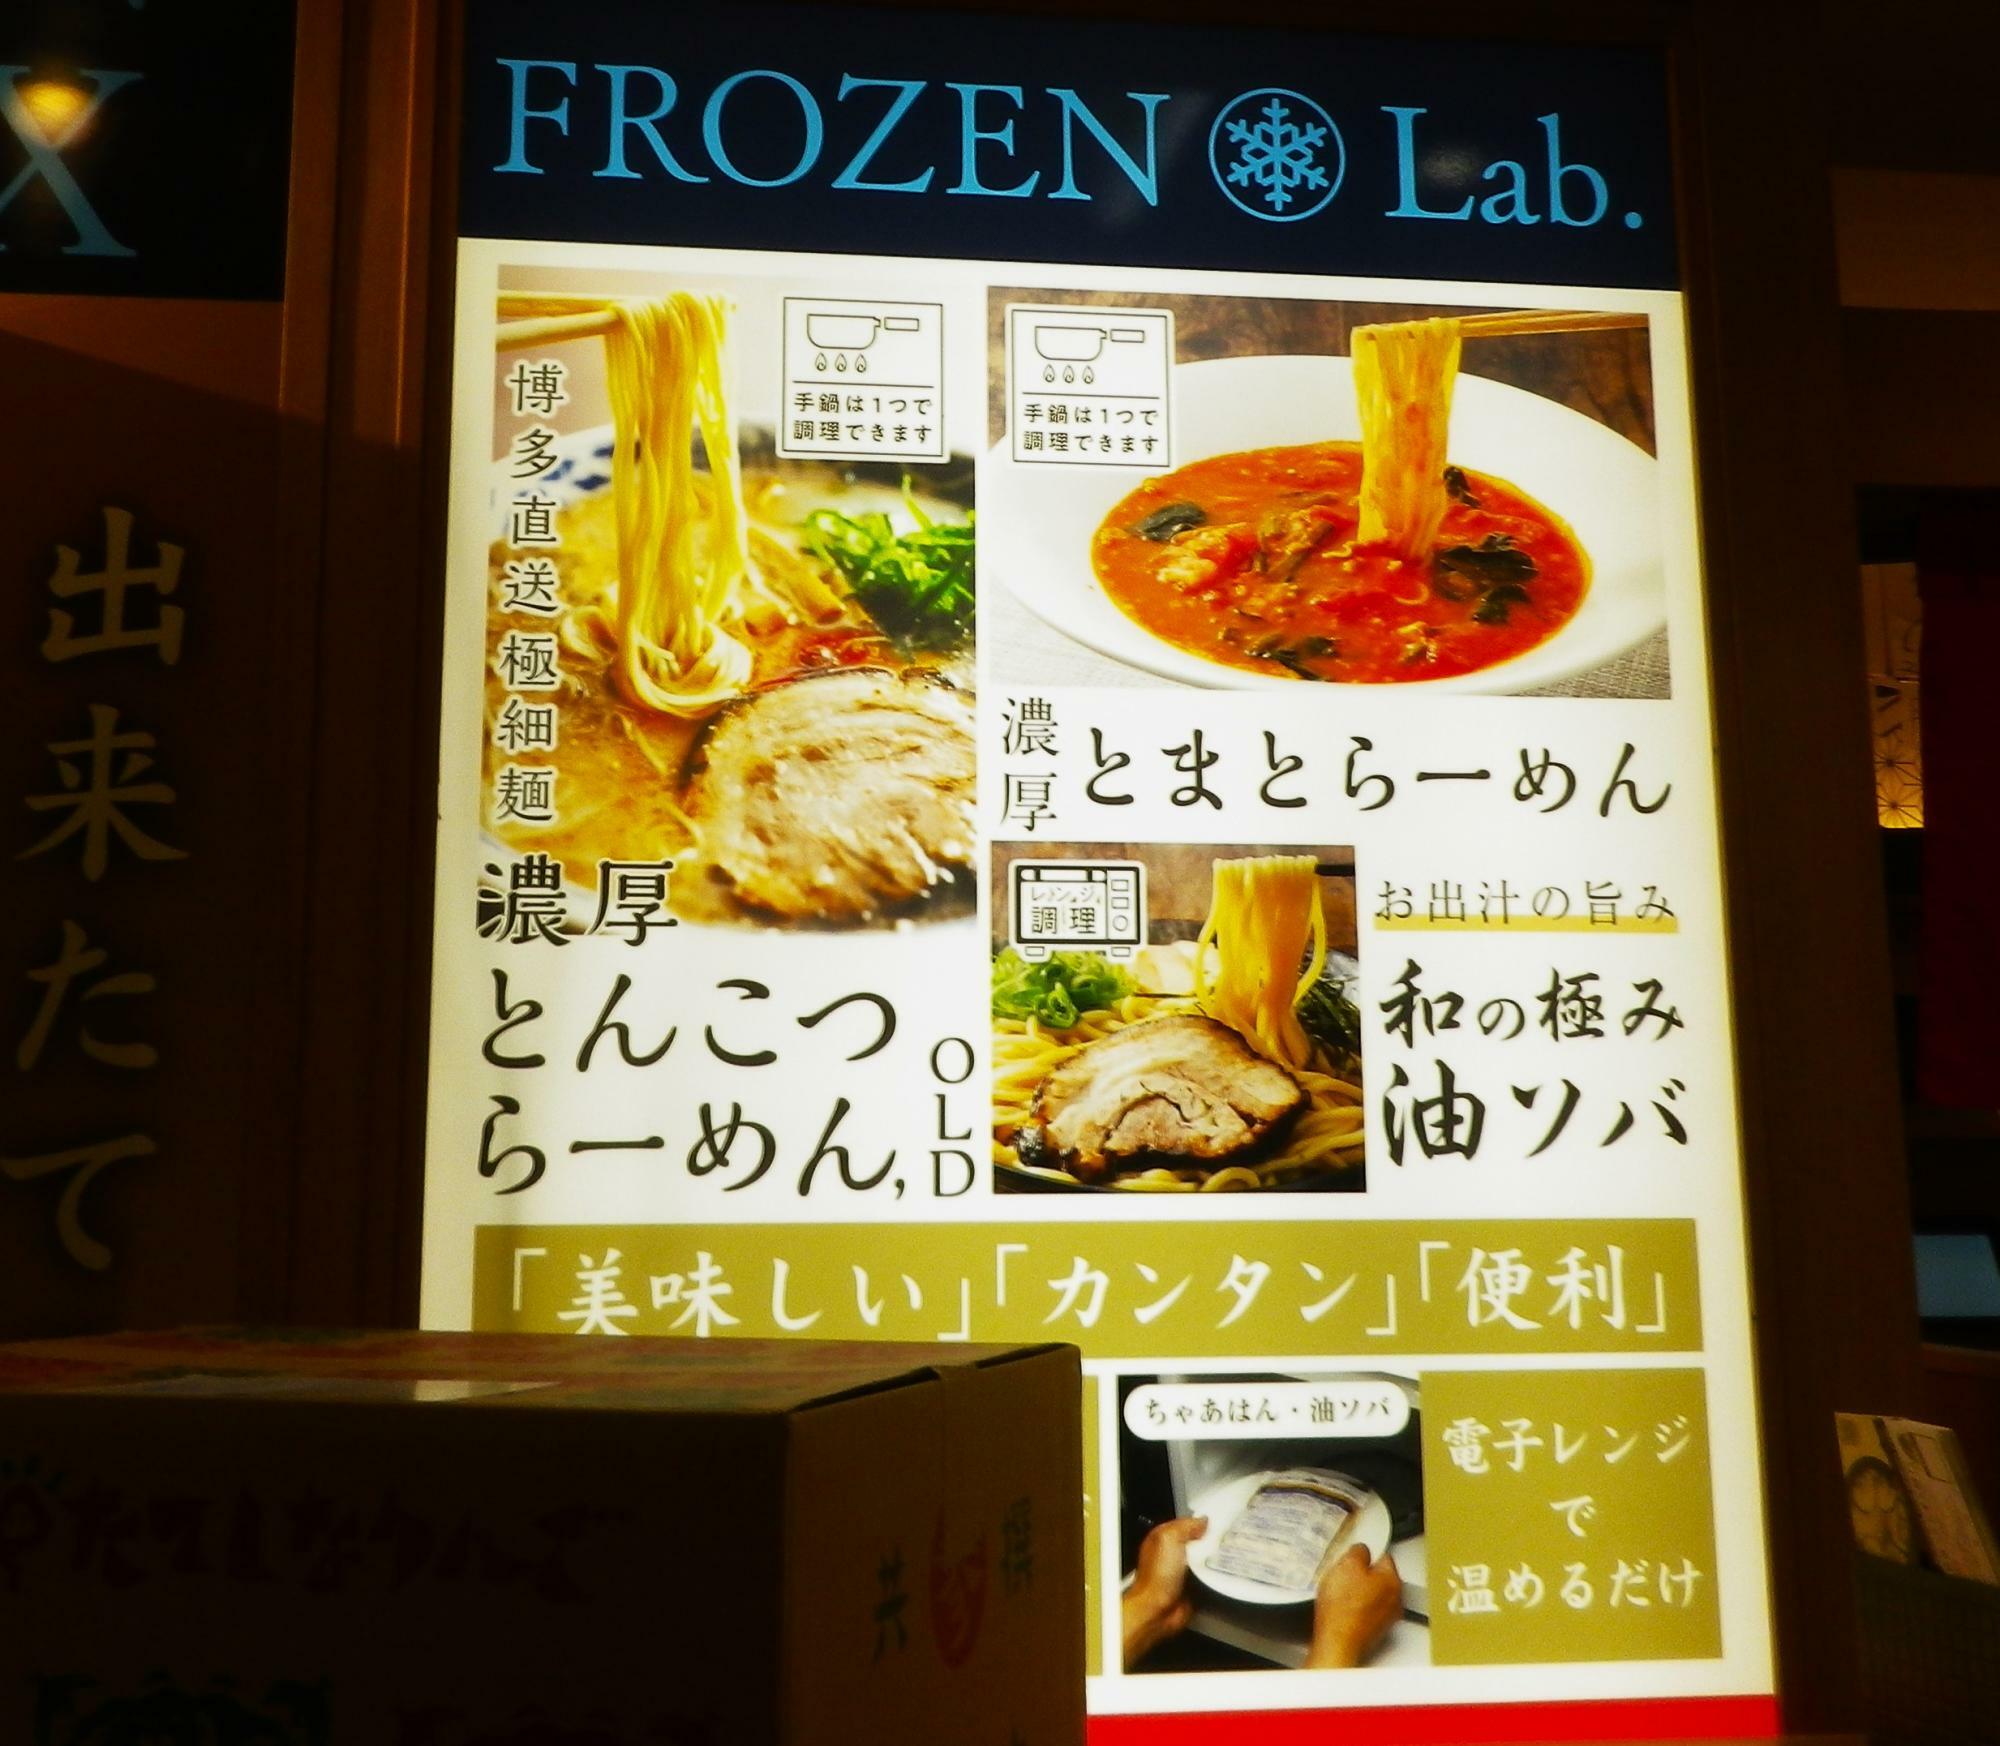 正に「美味しい」「カンタン」「便利」が特徴の冷凍食品。